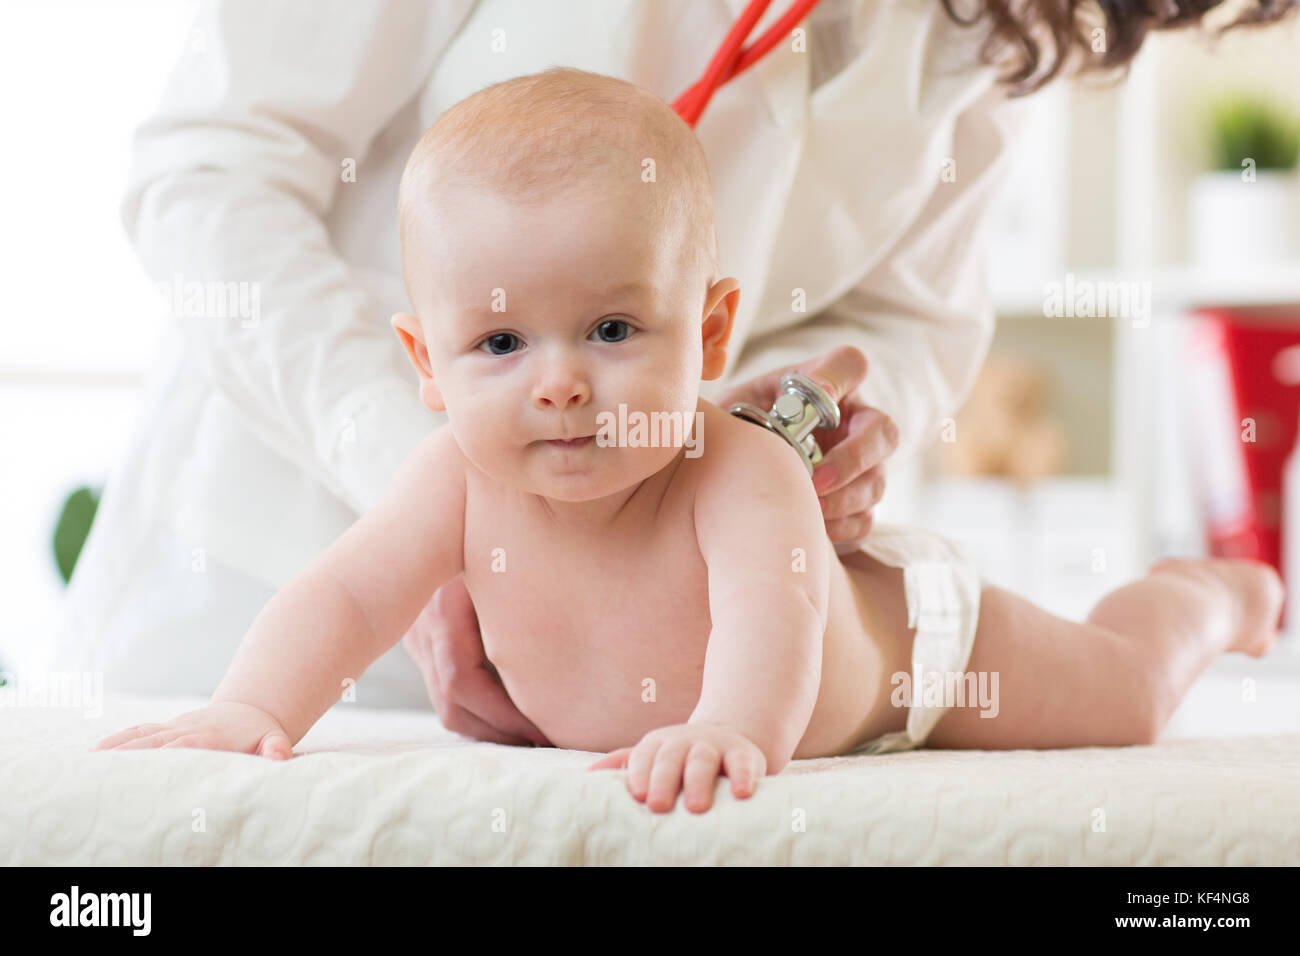 Kinderarzt untersucht neugeborenen Jungen. Arzt mit einem Stethoskop zu Baby's zurück zu überprüfen Herzschlag zu hören. Kid ist mit Blick auf die Kamera. Stockfoto